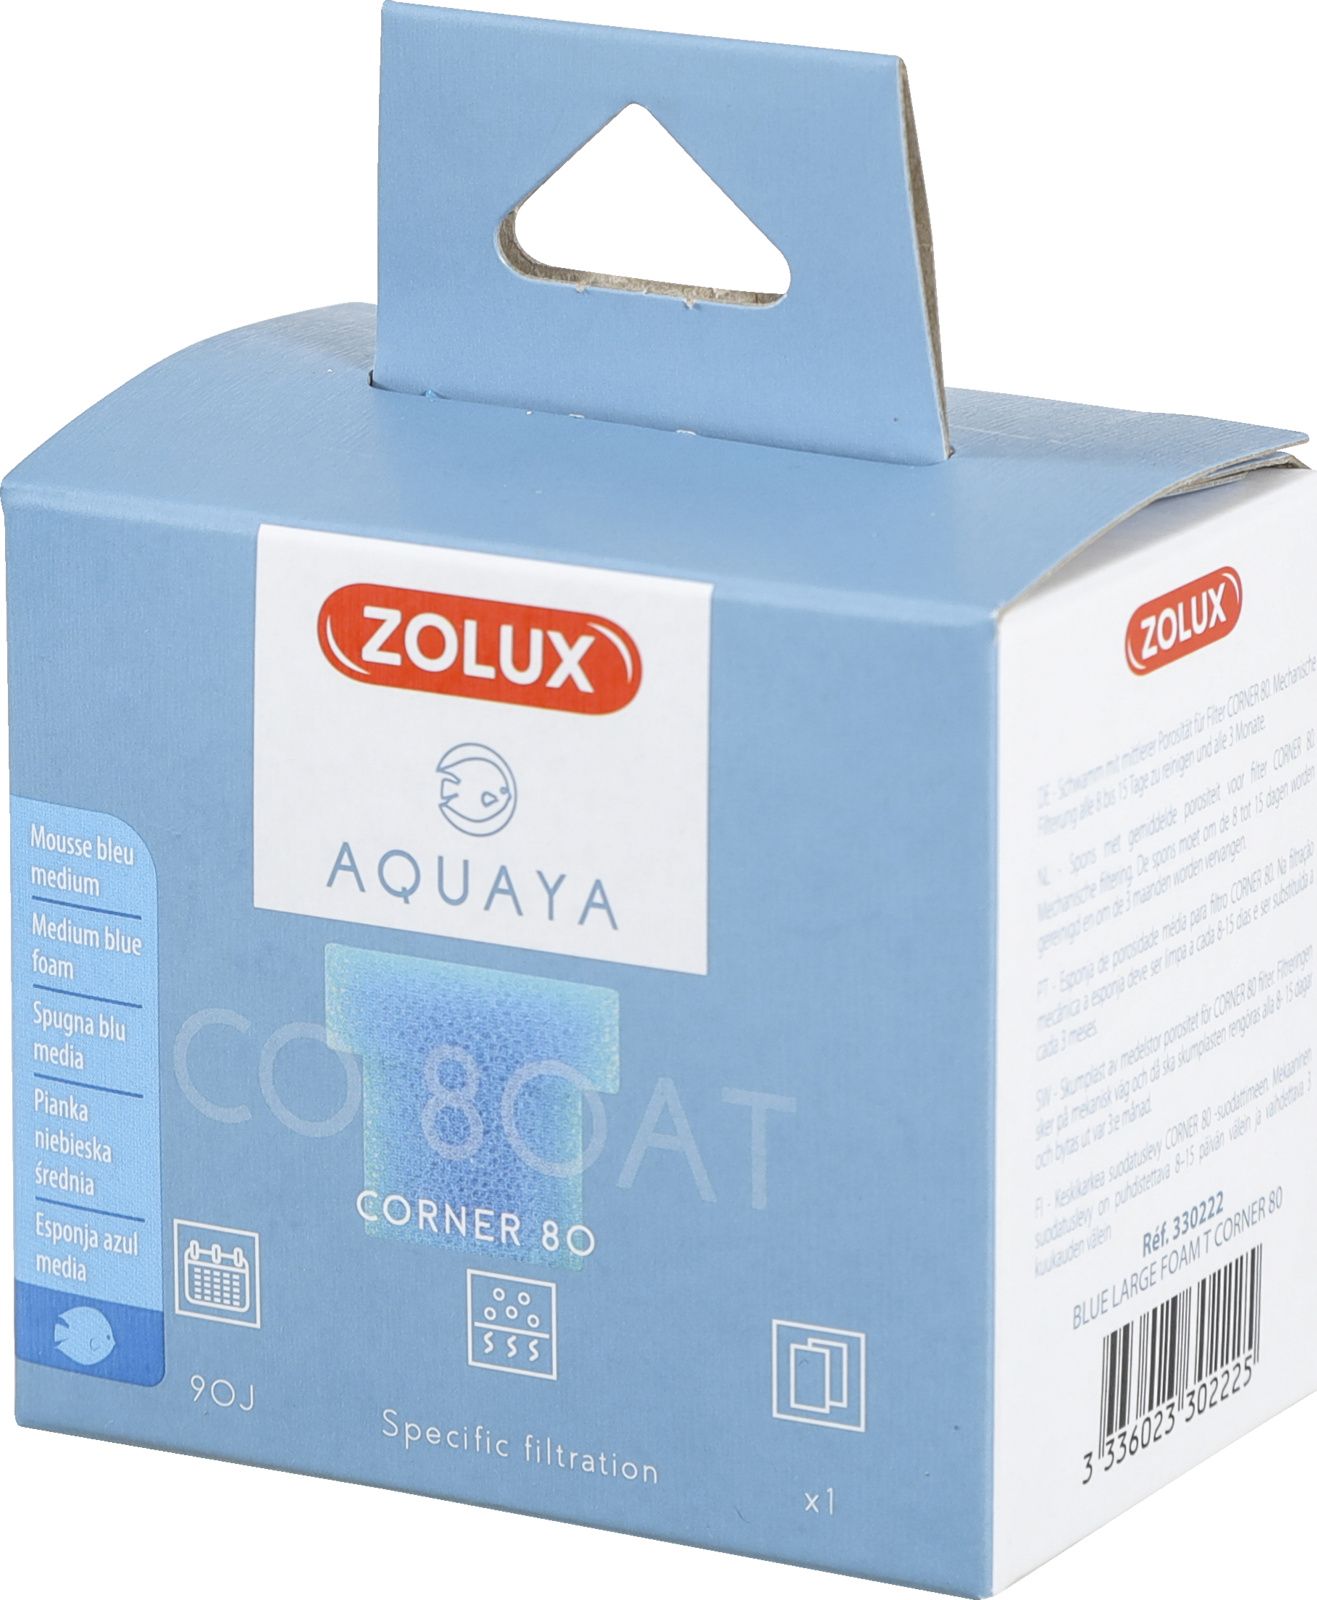 Zolux AQUAYA Wklad gabka Blue Large Foam T Corner 80 7544716 (3336023302225) akvārija filtrs